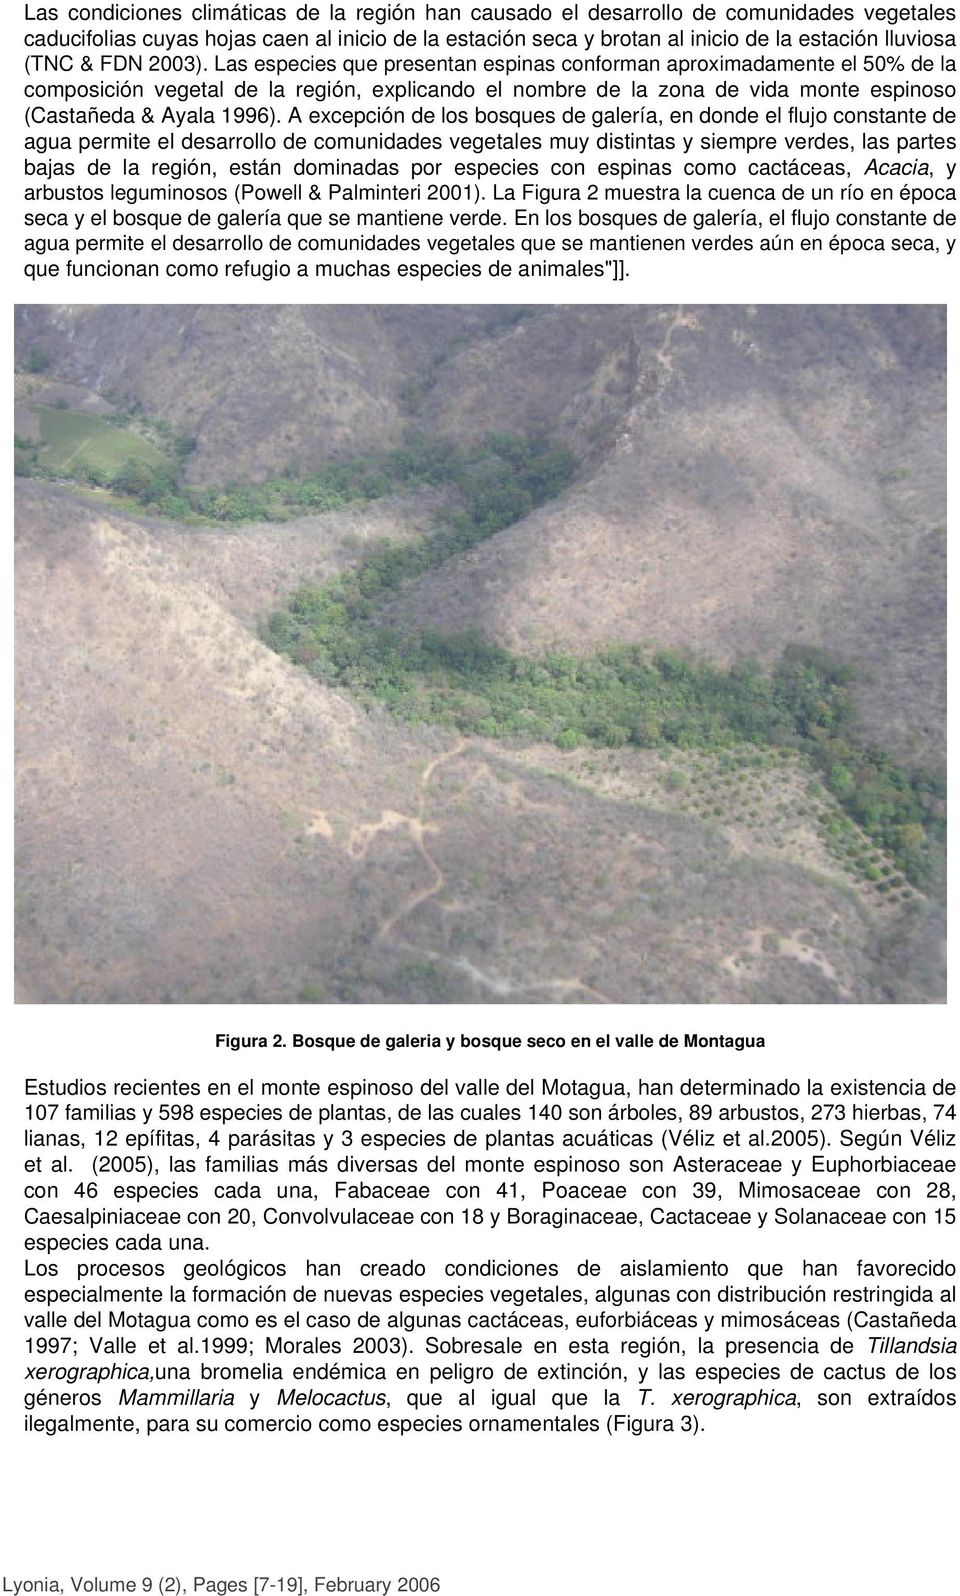 Las especies que presentan espinas conforman aproximadamente el 50% de la composición vegetal de la región, explicando el nombre de la zona de vida monte espinoso (Castañeda & Ayala 1996).